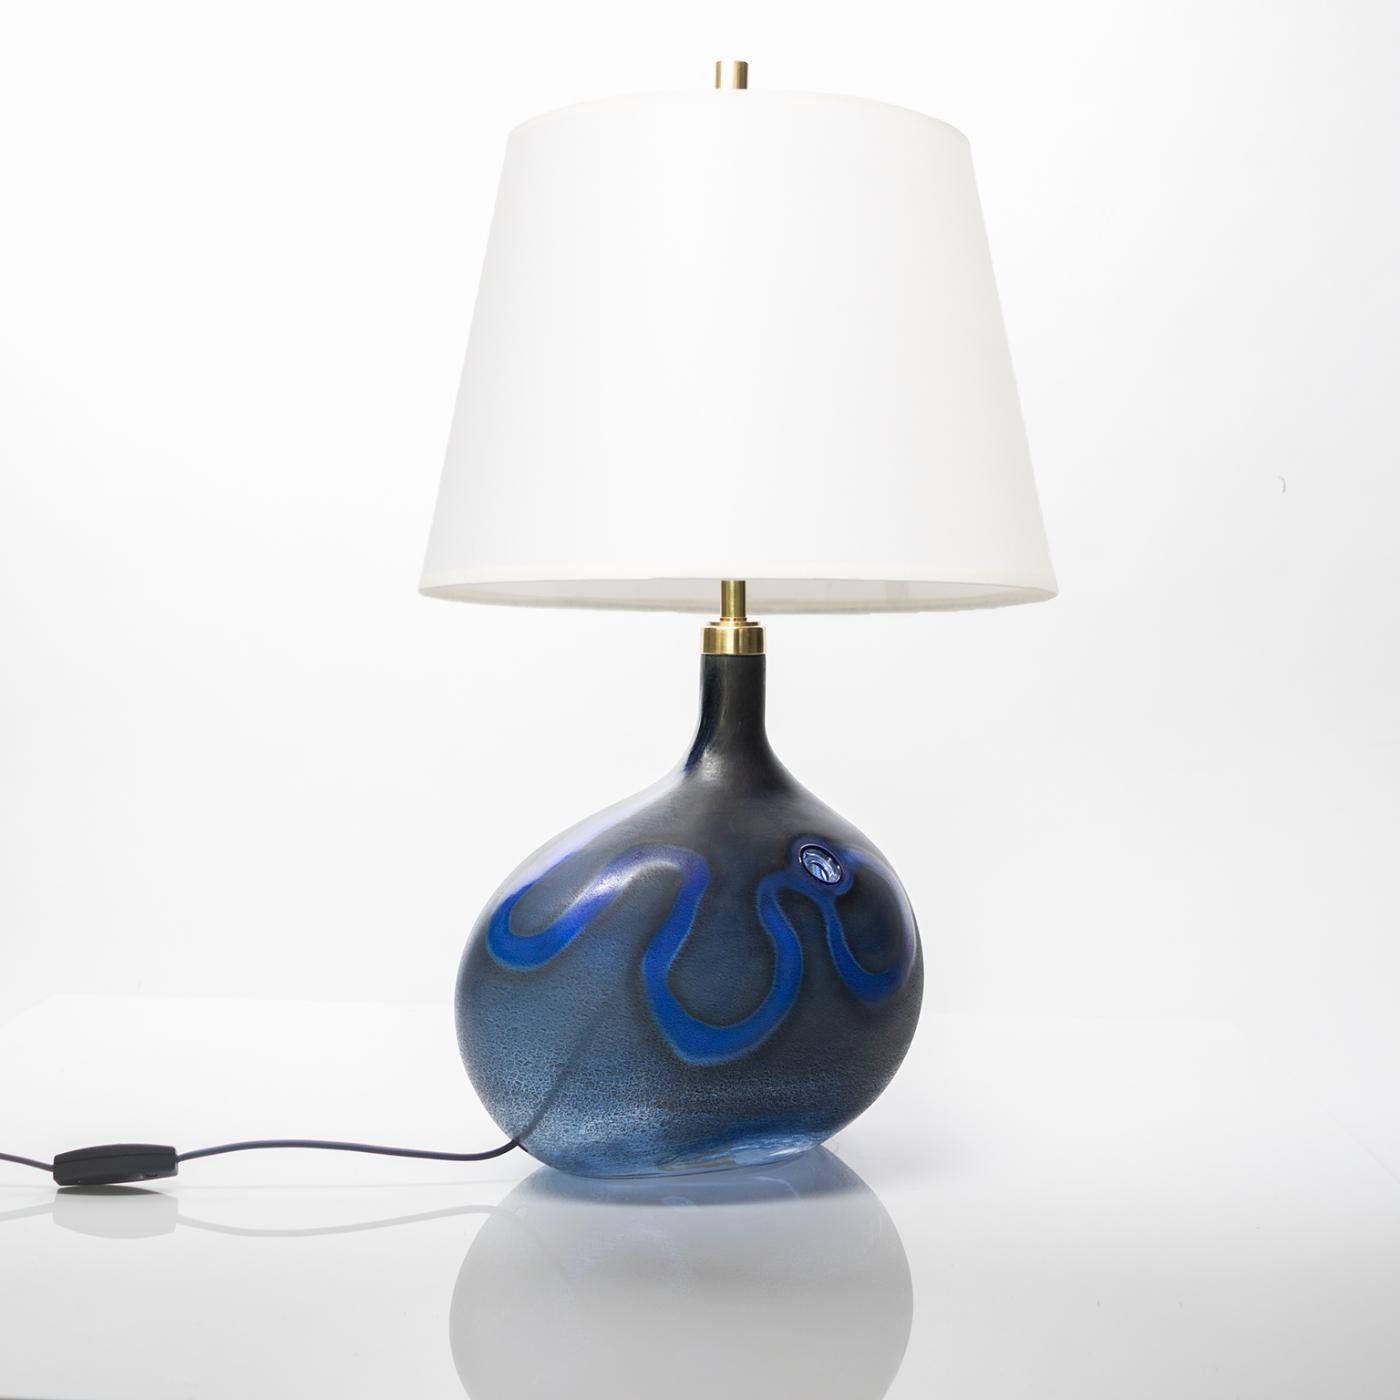 La lampe de table en verre conçue par Micheal Bang présente une forme asymétrique dans une finition mate d'un bleu profond. Fabriqué au Danemark vers 1980 par Holmegaard, conserve l'étiquette. Nouvellement recâblé avec un faisceau de douilles